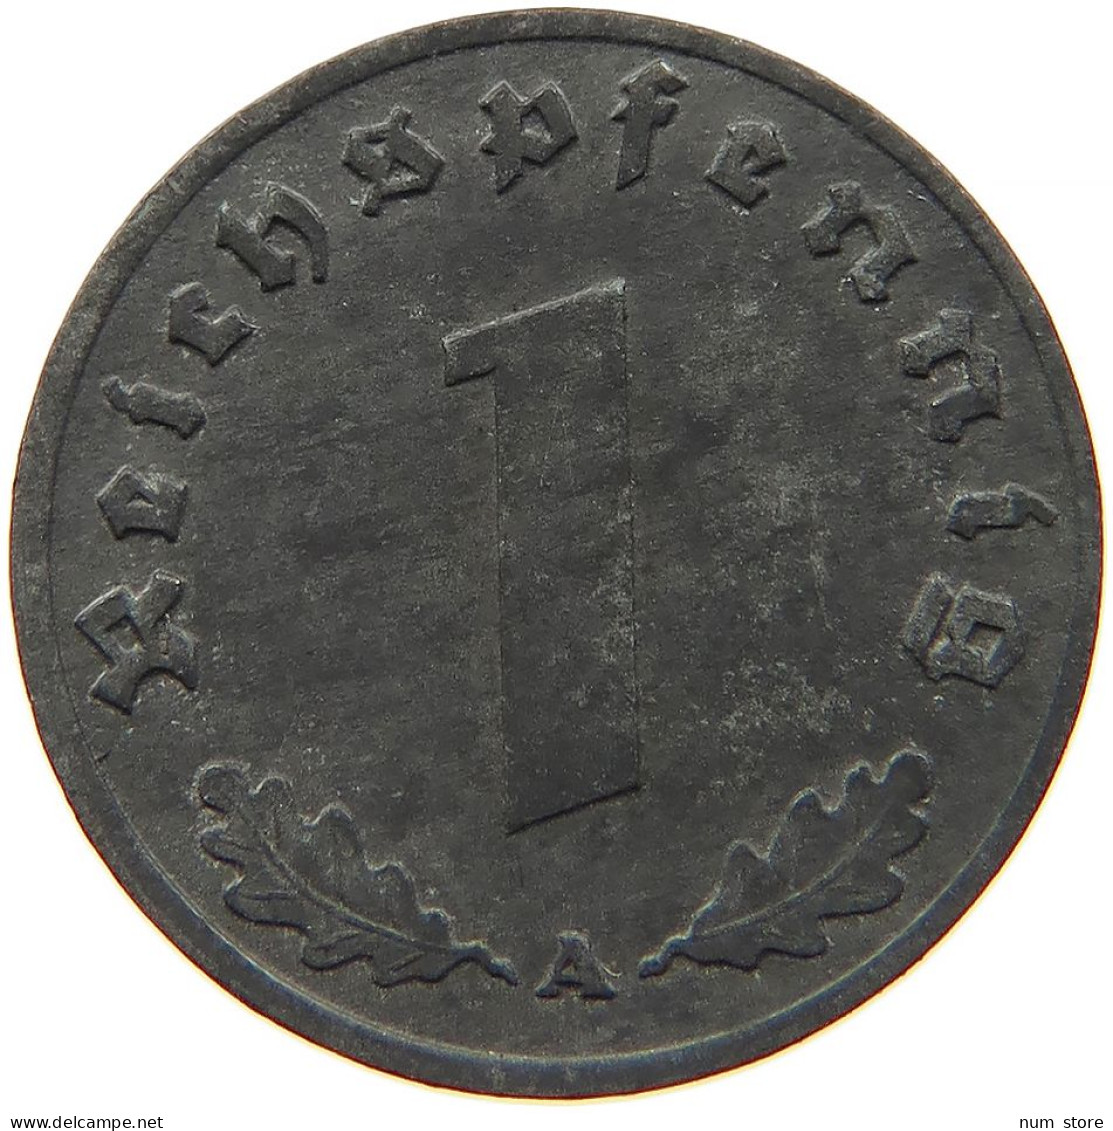 GERMANY 1 REICHSPFENNIG 1942 A #s088 0021 - 1 Reichspfennig